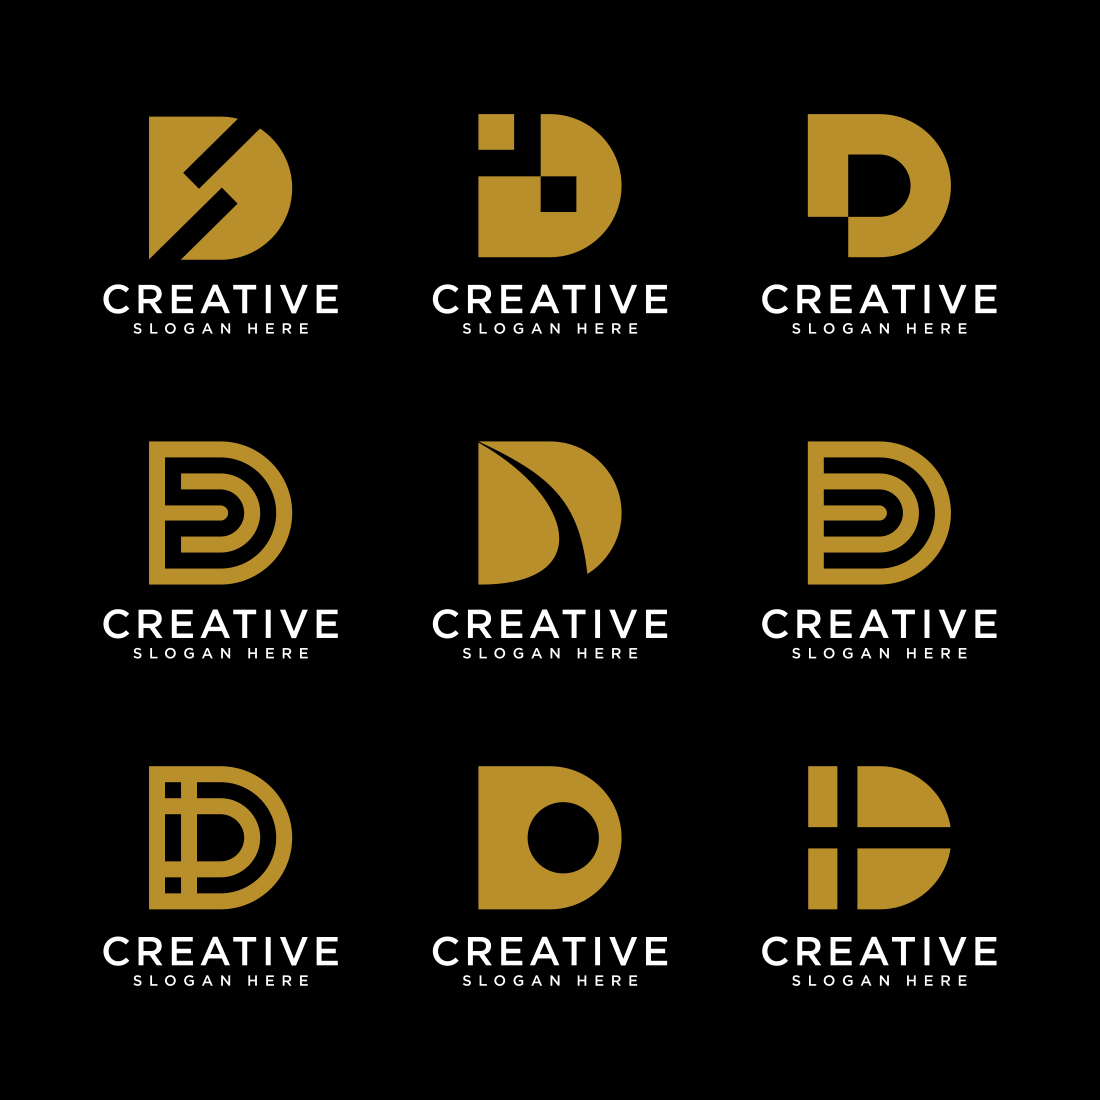 Creative Letter LV Logo Design Icon , LV Vector Logo Template Stock Vector